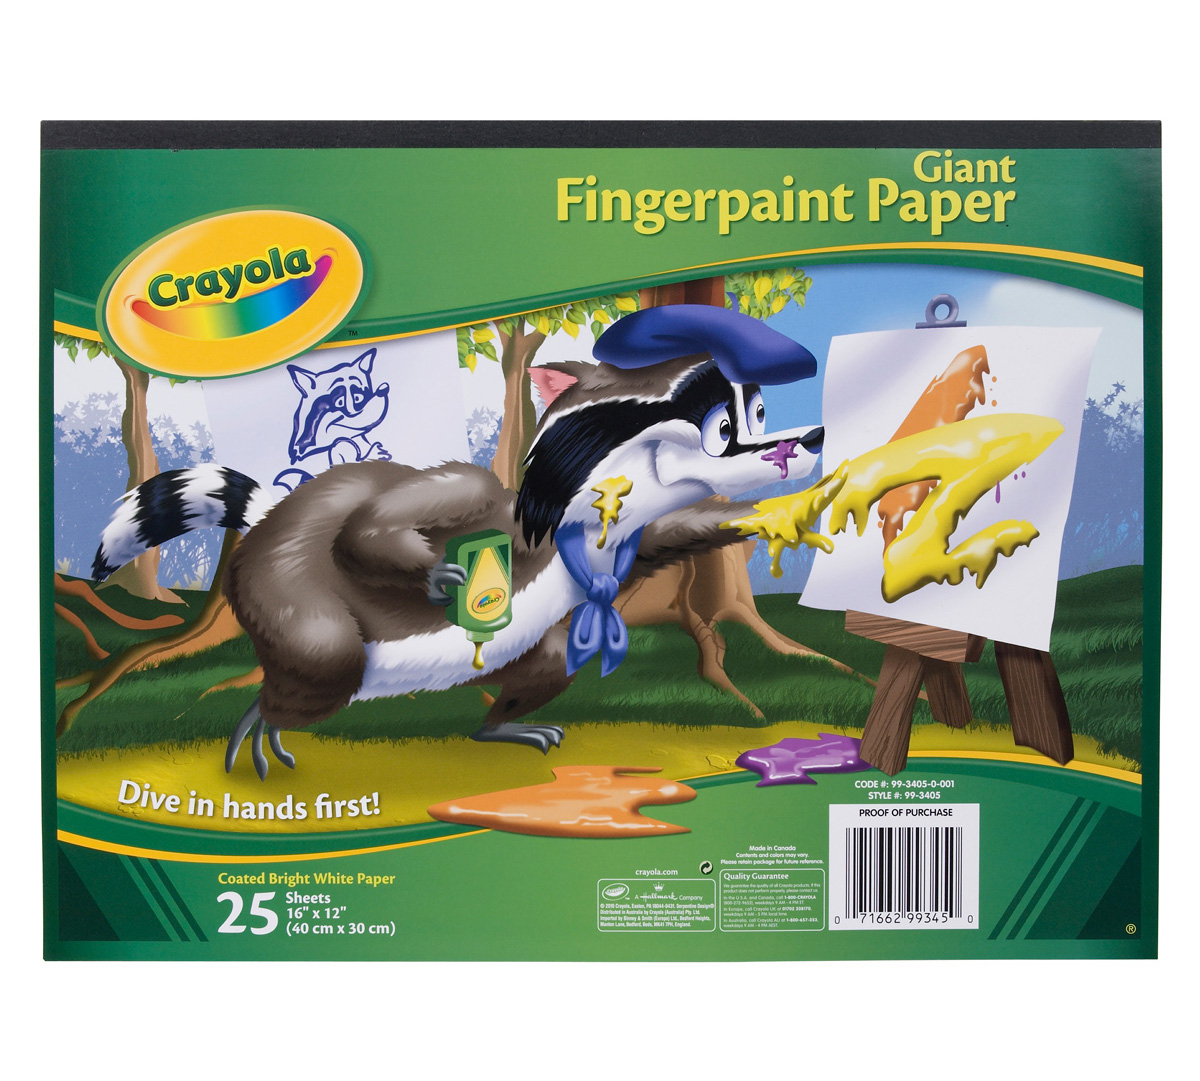 Giant Fingerpaint Paper | Crayola